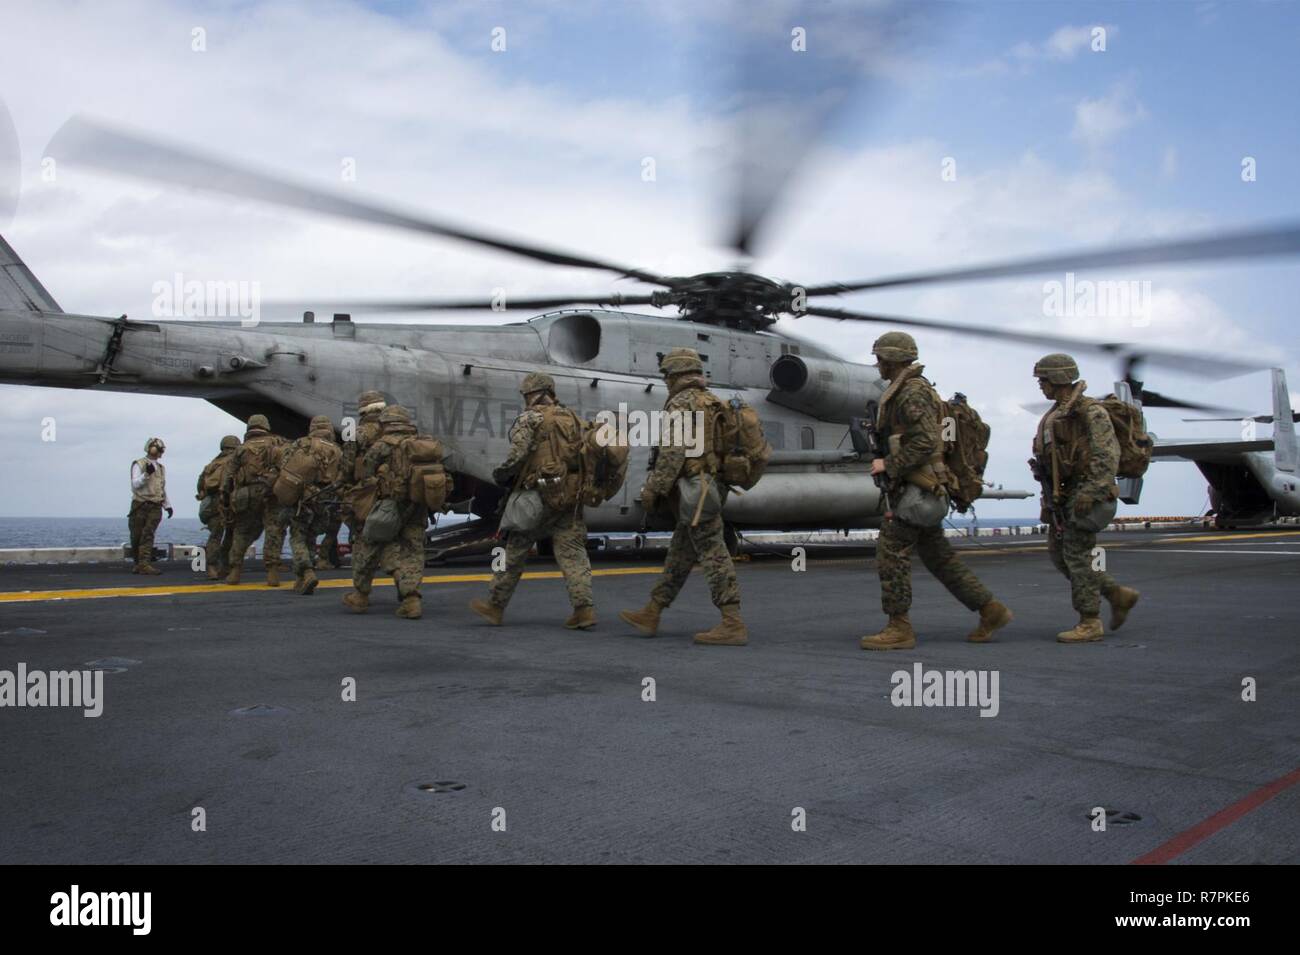 EAST CHINA SEA (24. März 2017) Marines, zugeordnet zu den 31 Marine Expeditionary Unit (MEU), begeben Sie sich Ein CH-53E Super Stallion, zugeordnet zu den "Flying Tigers" der Marine Medium Tiltrotor Squadron (VMM) 262, auf dem Flugdeck des Amphibious Assault ship USS BONHOMME RICHARD (LHD6) während einer Air Assault Übung als Teil einer Zertifizierung (certex). CERTEX durchgeführt wird zur Bewertung der Integration aller Elemente von Bonhomme Richard Expeditionary Strike Group (BHR ESG) und 31 Marine Expeditionary Unit (MEU) ihre Fähigkeit zur Planung und Mission wesentliche Aufgaben ausführen zu testen. B Stockfoto